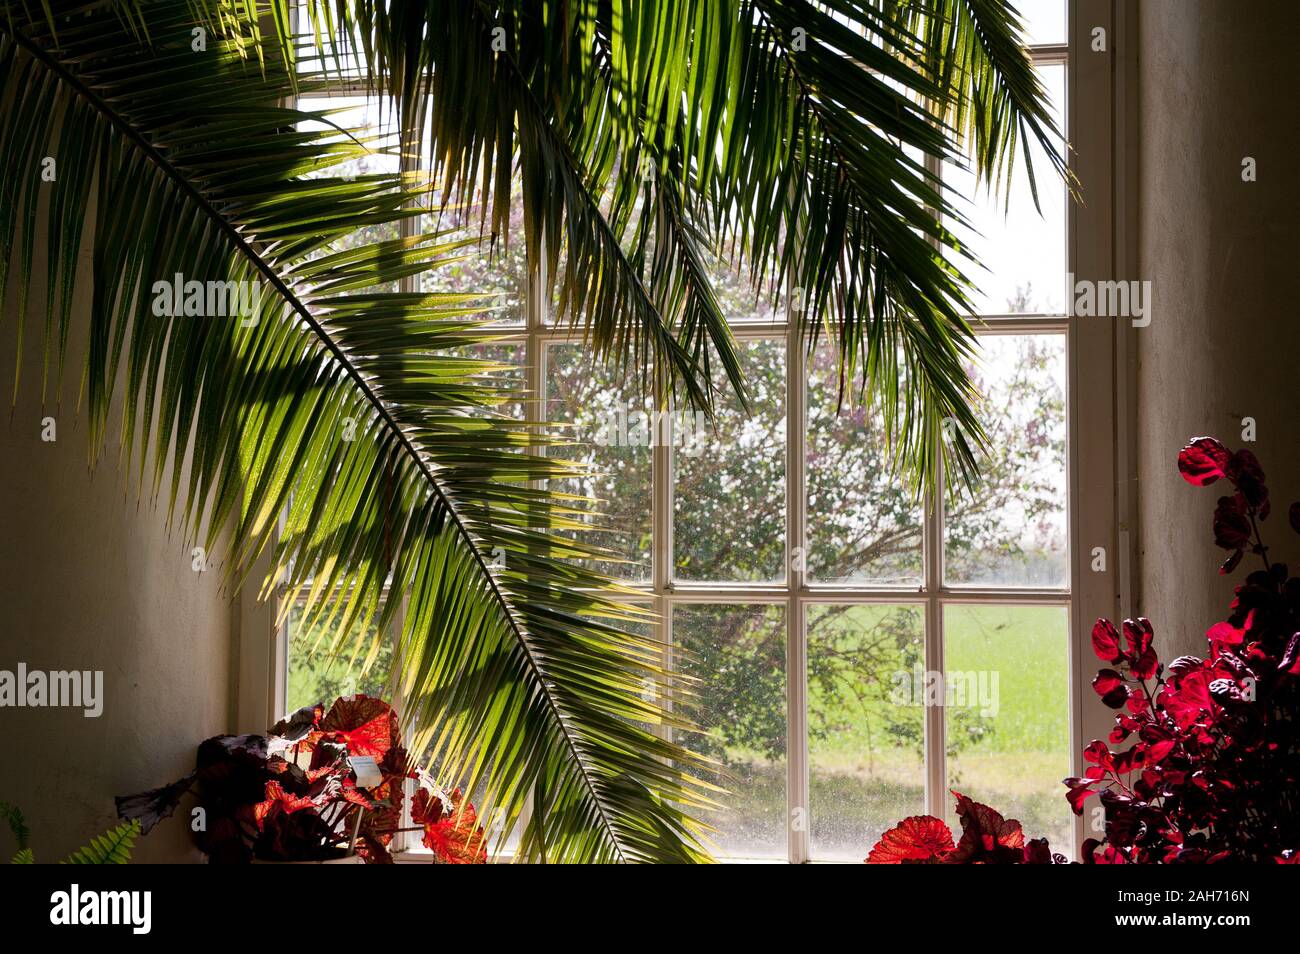 Palm en gran ventana de madera antigua, exuberantes plantas y flores en la luz del sol que entra a través de la ventana, hermoso día soleado, nadie, horizontal, RM. Foto de stock